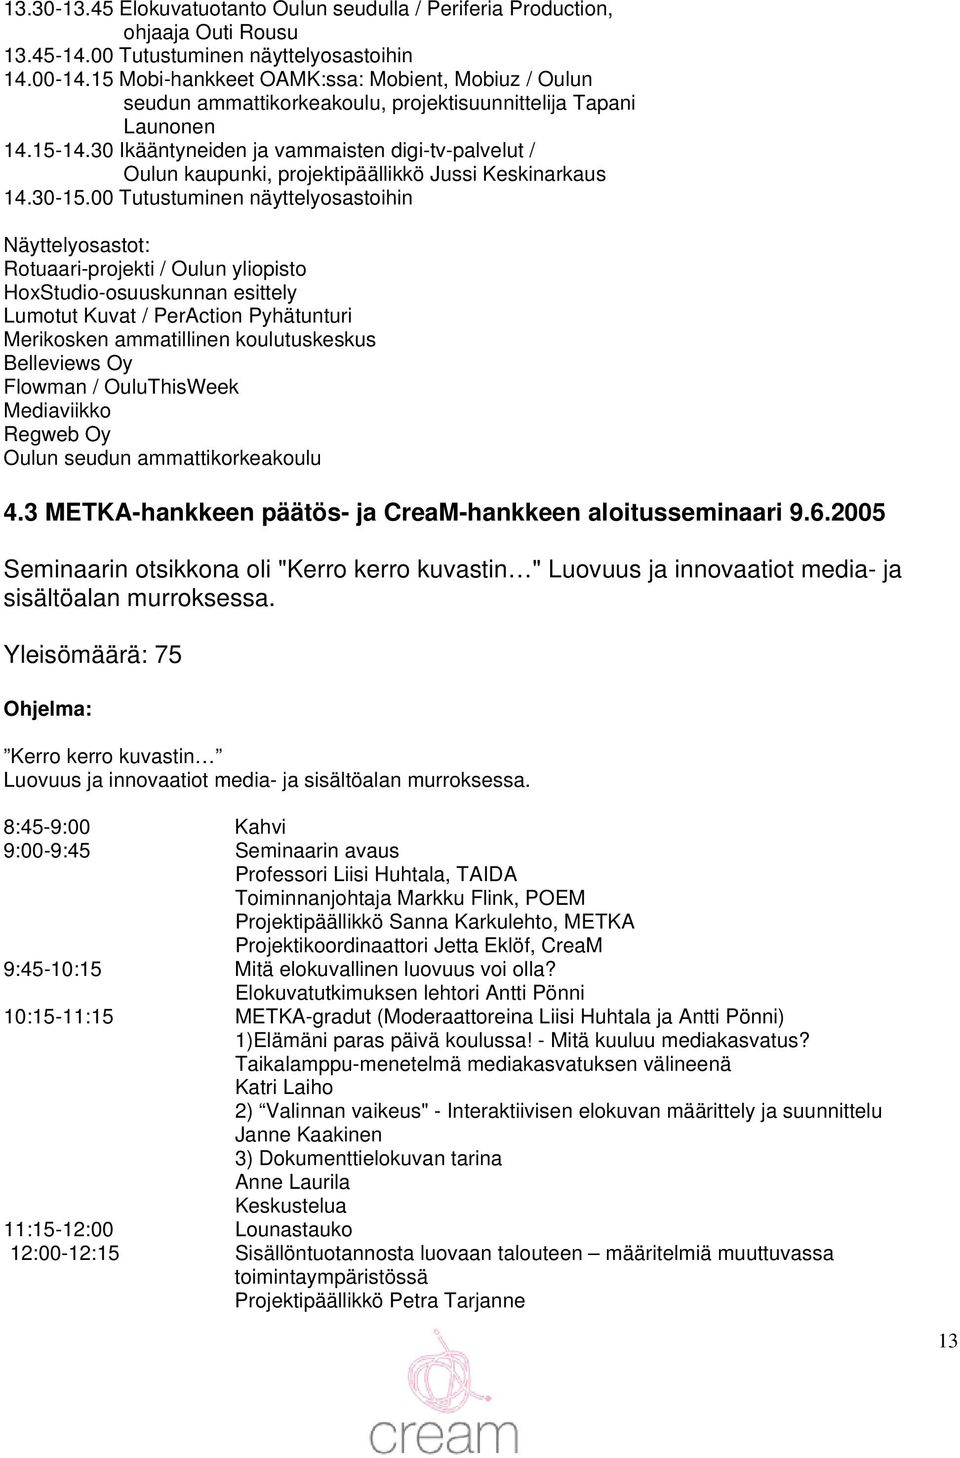 30 Ikääntyneiden ja vammaisten digi-tv-palvelut / Oulun kaupunki, projektipäällikkö Jussi Keskinarkaus 14.30-15.